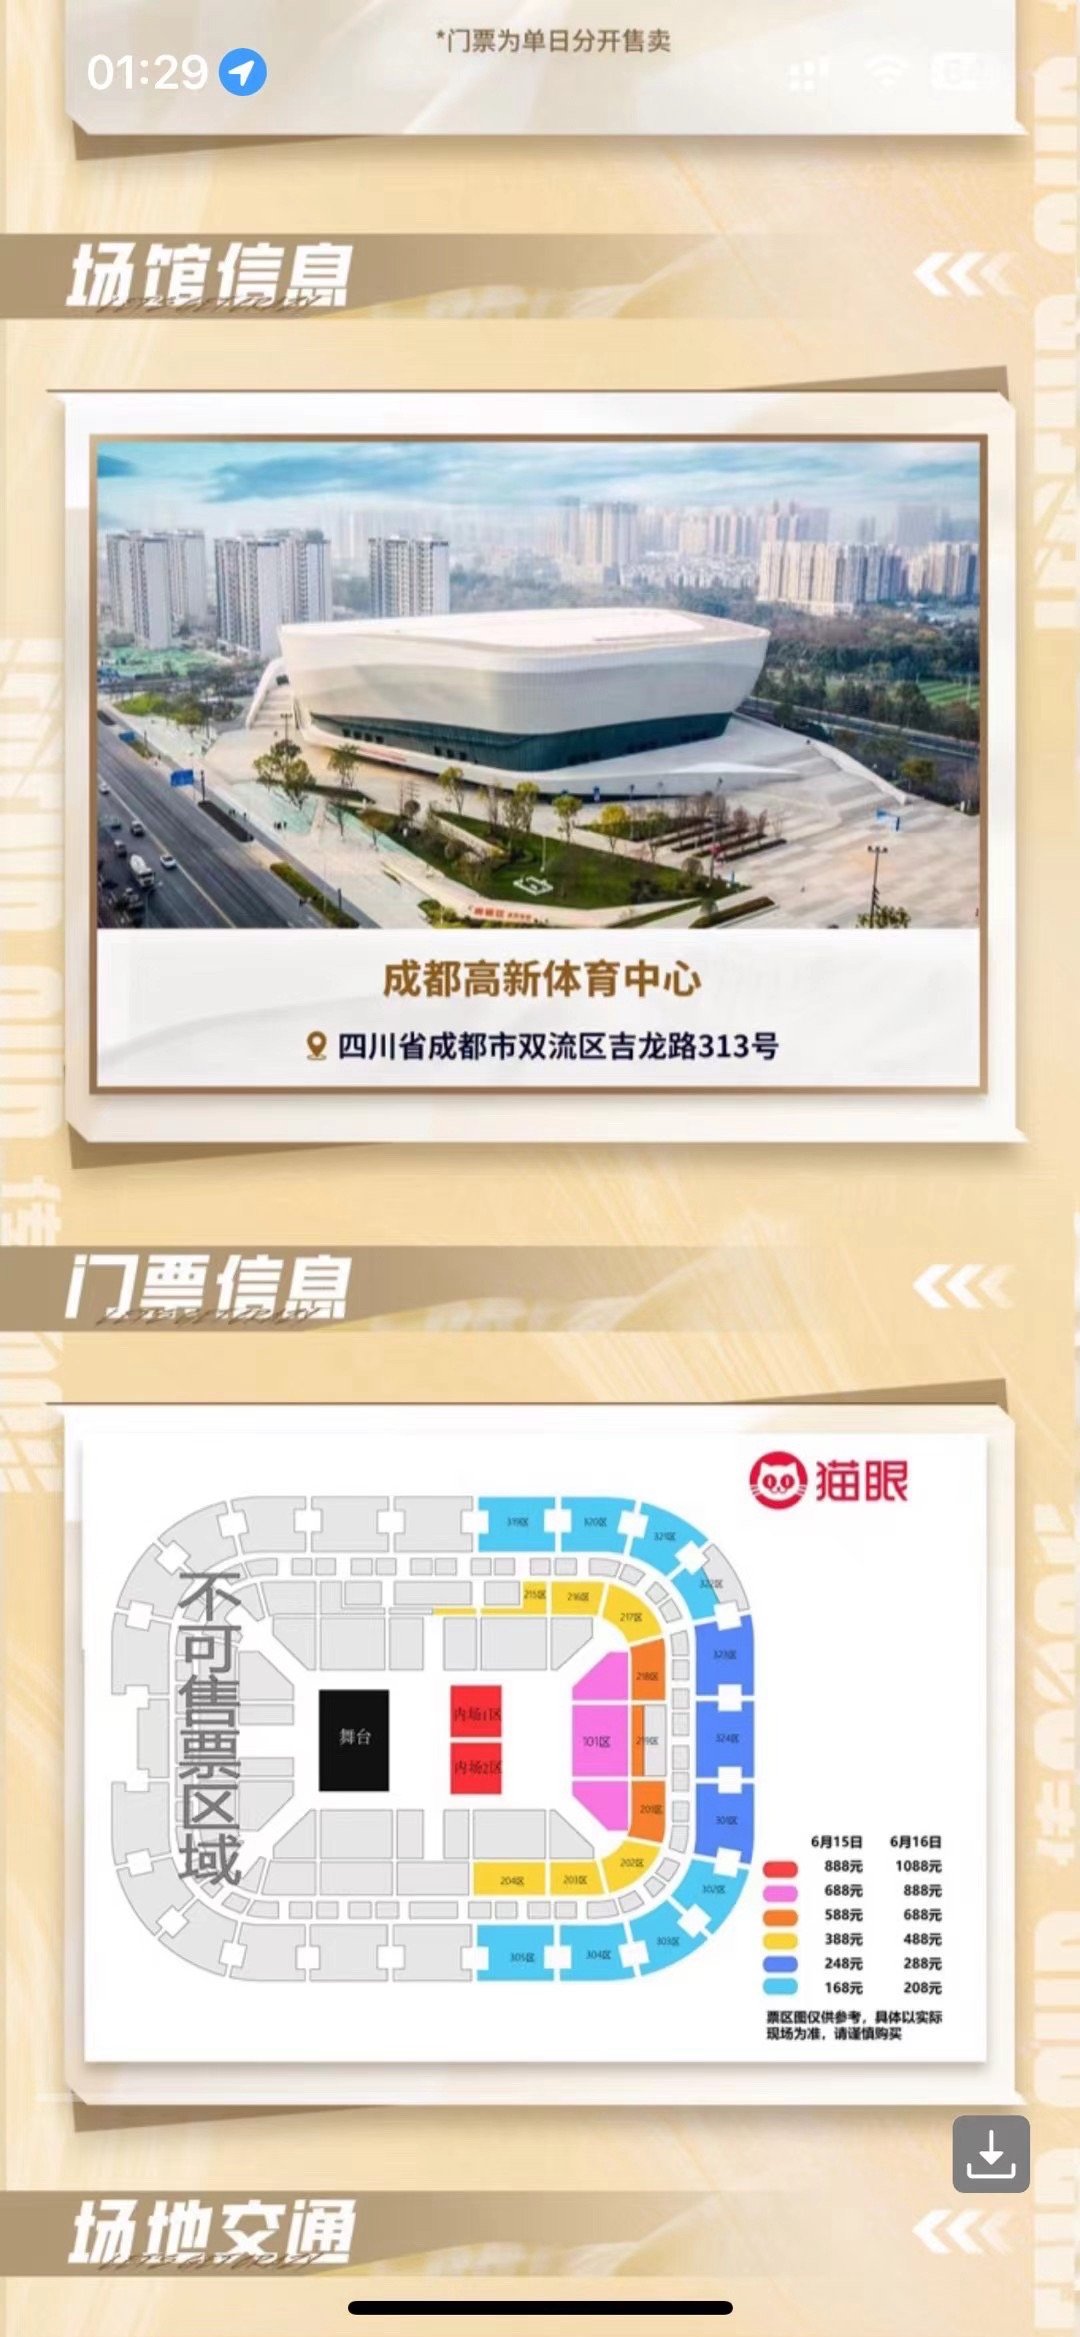 老头杯总决赛将在6月16日在成都高新体育中心举行！内场票价1088